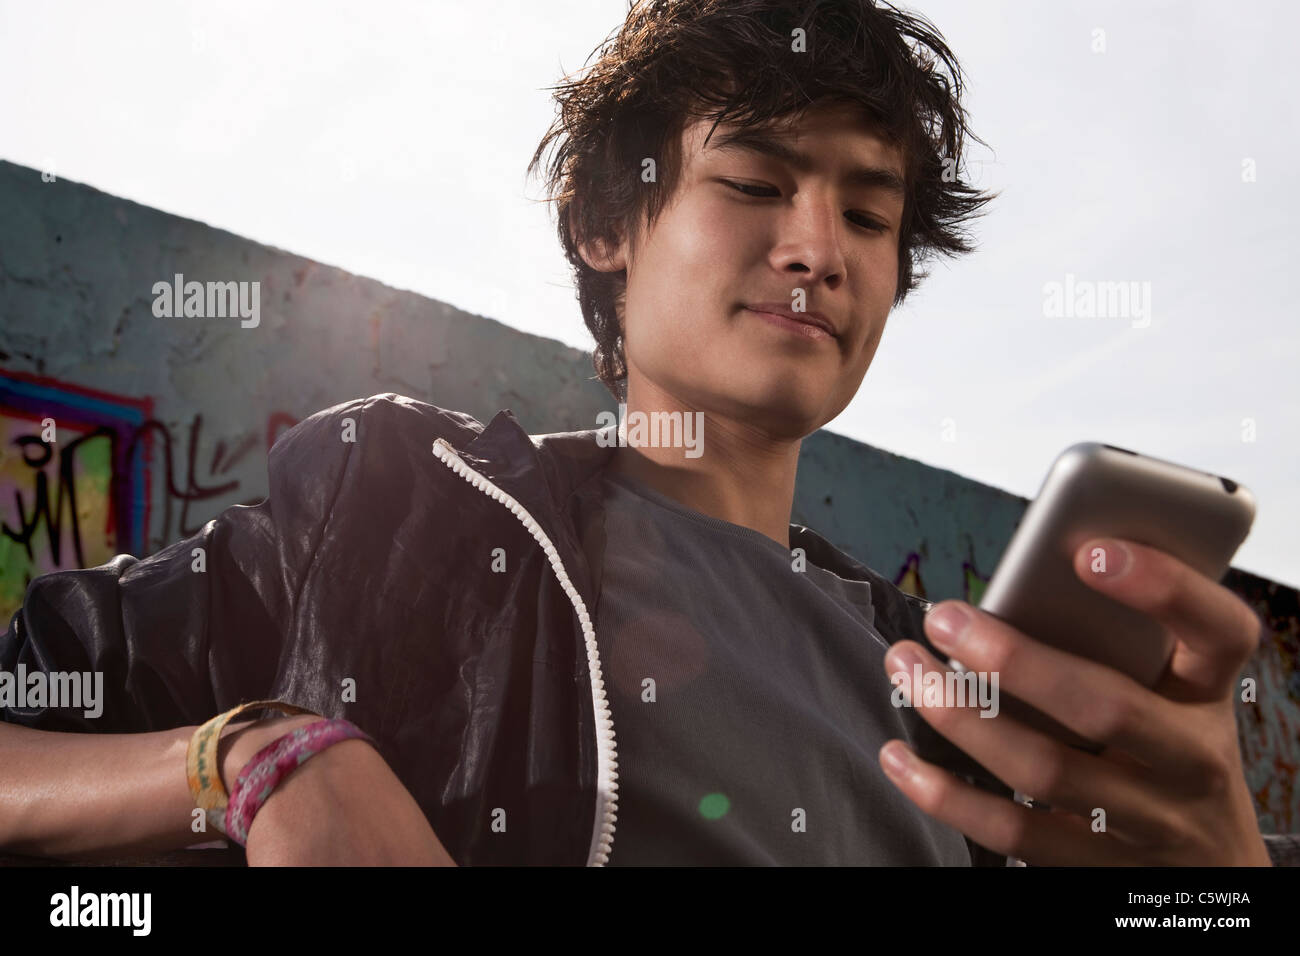 Germania, Berlino, ragazzo adolescente utilizzando il telefono cellulare Foto Stock